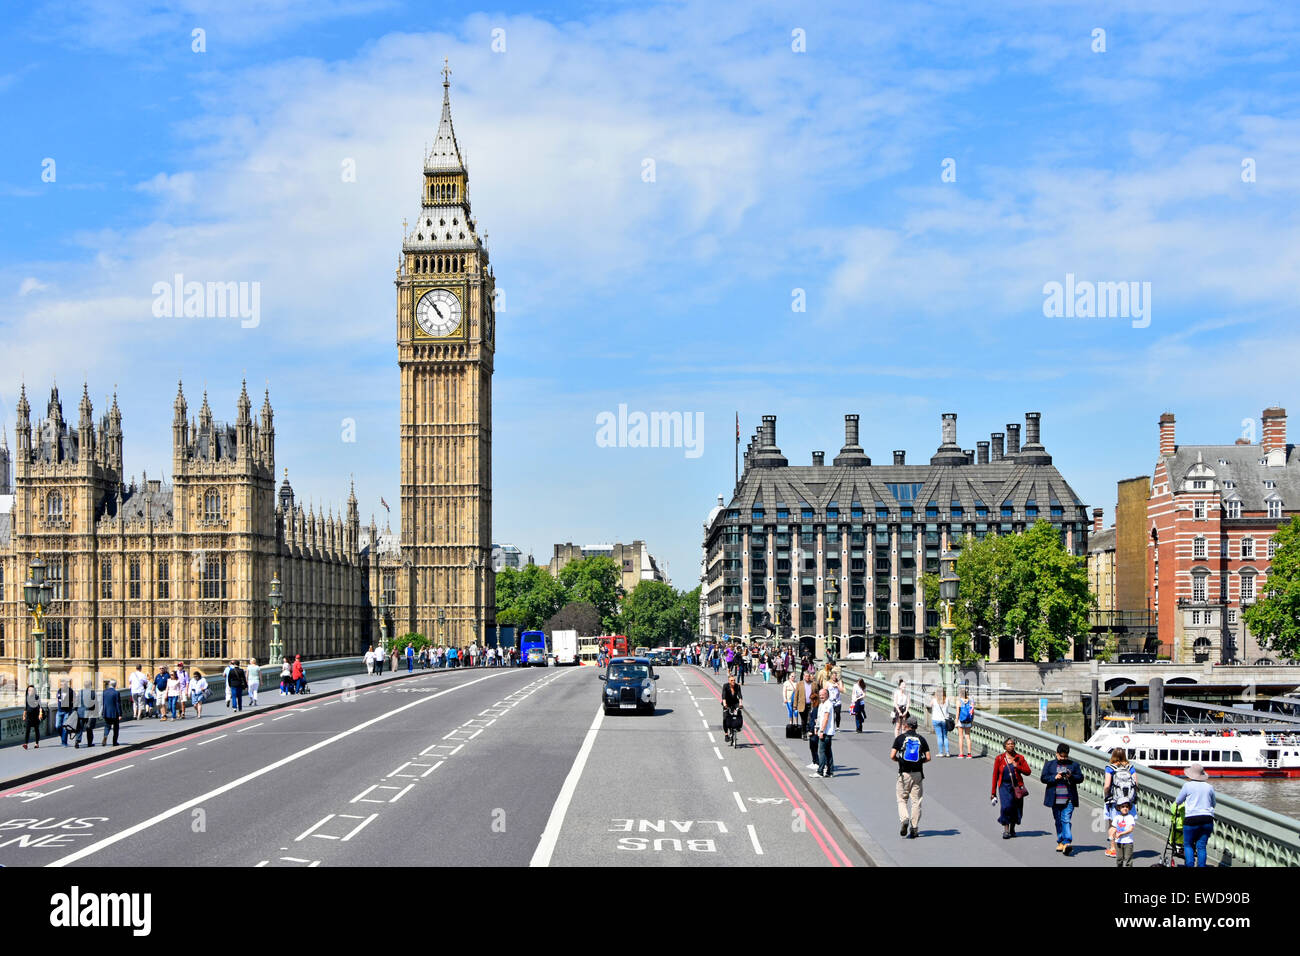 Blauer Himmel mit Blick auf die Westminster Bridge mit dem Big Ben Elizabeth Uhrenturm Houses of Parliament und dunklen MPS Portcullis House London England UK Stockfoto